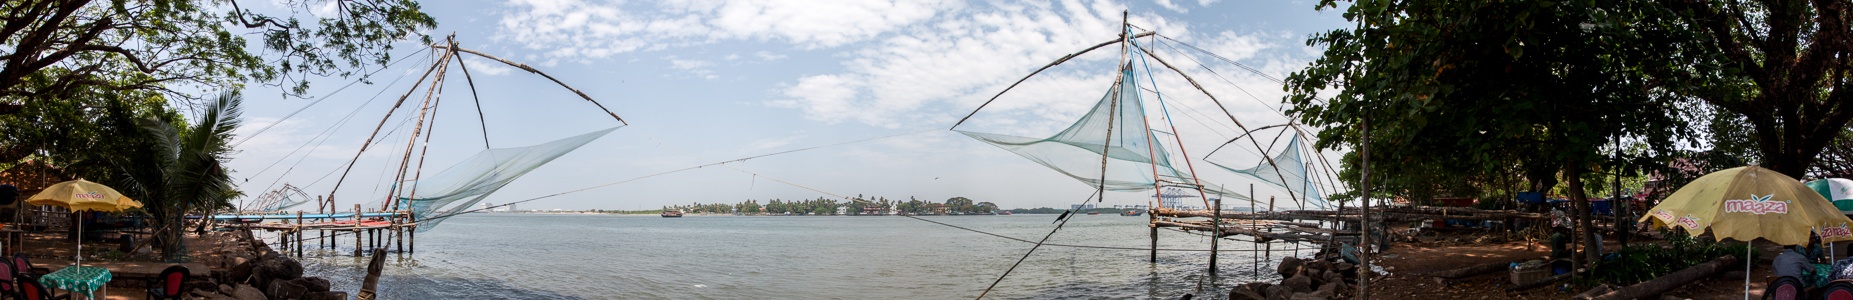 Fort Kochi: Chinesische Fischernetze, Vembanad Lake Kochi